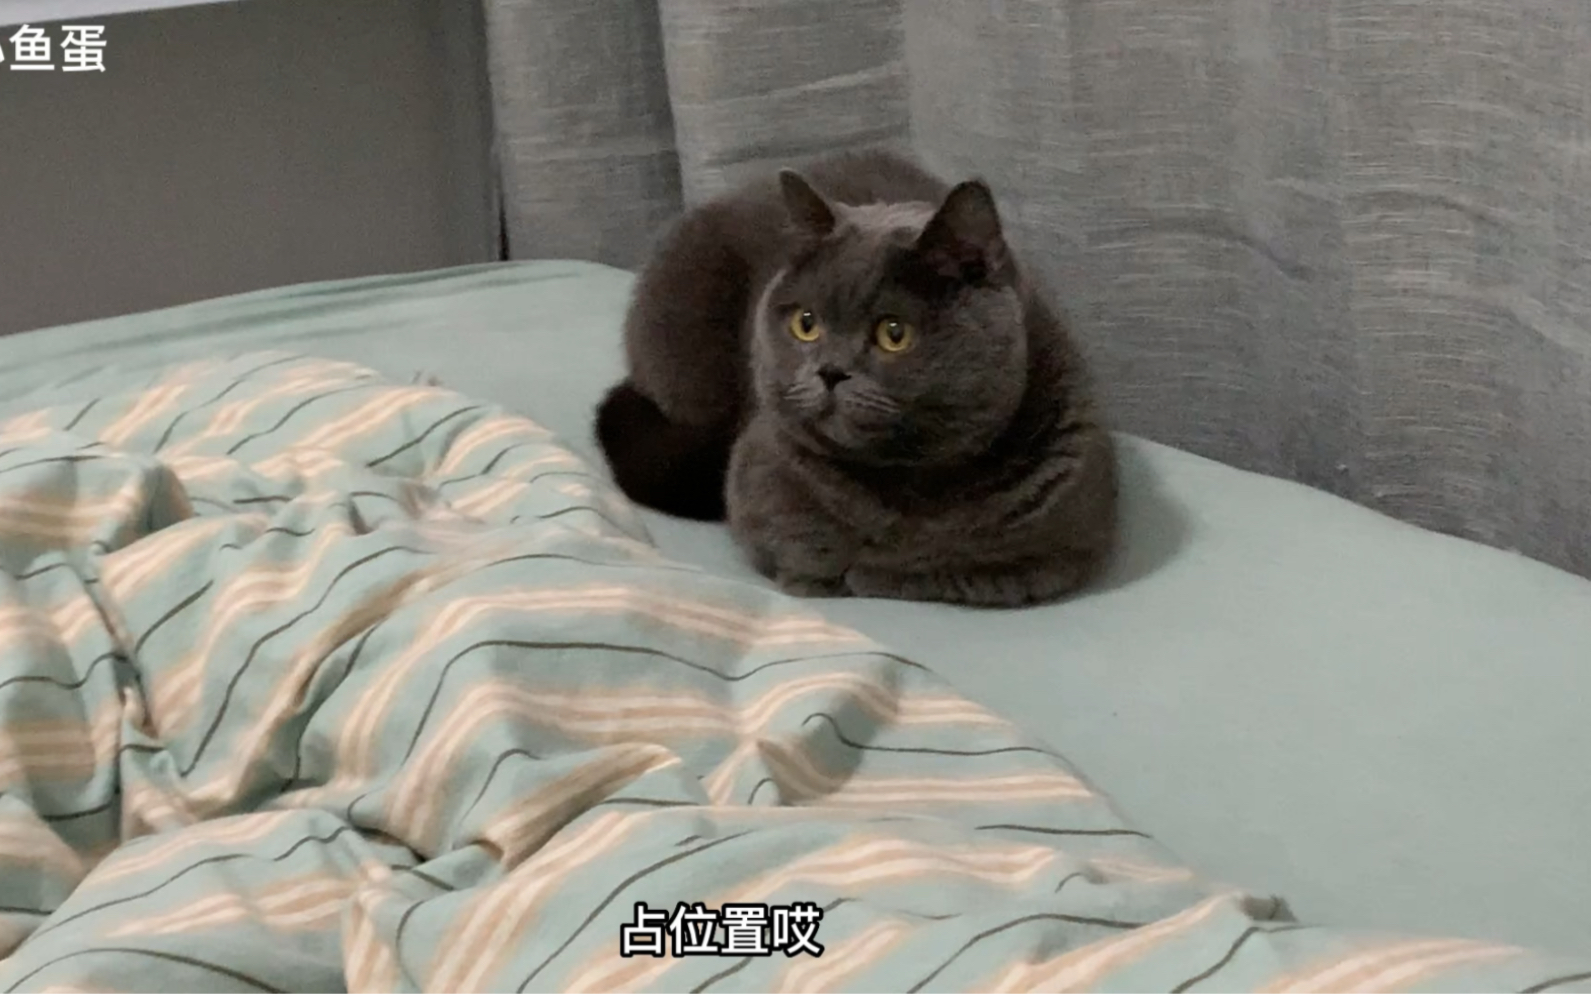 很有分寸感的猫咪，每天准时上床睡觉，只占床角一个小角落～